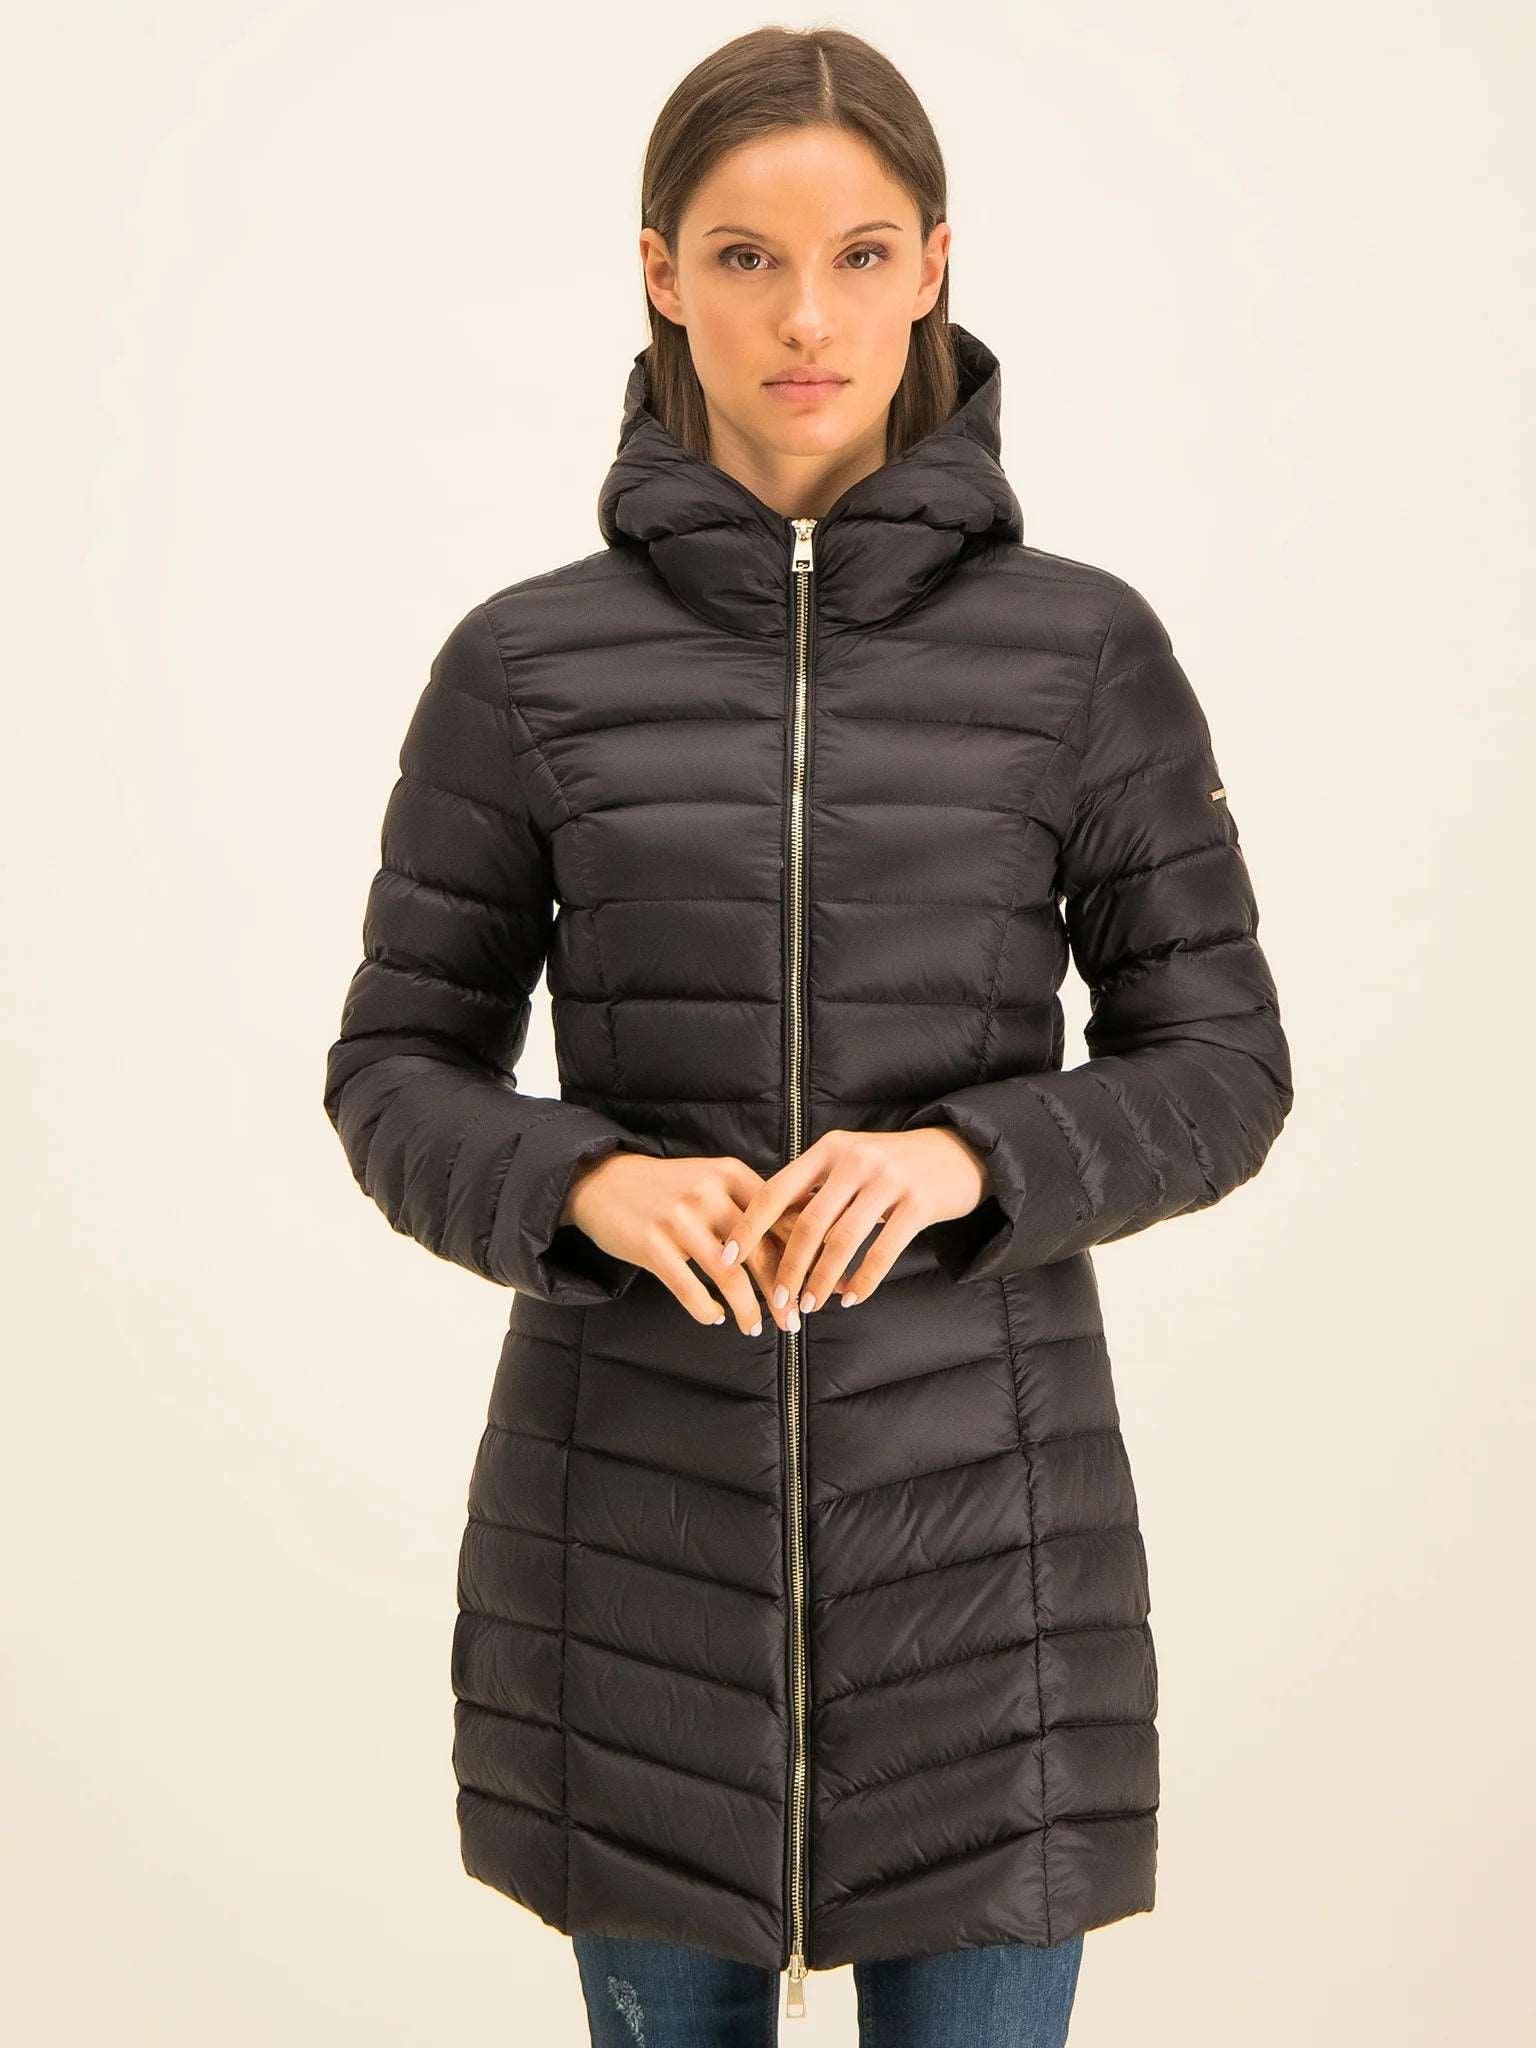 VICTORIA - Elegant Warm Coat for Women